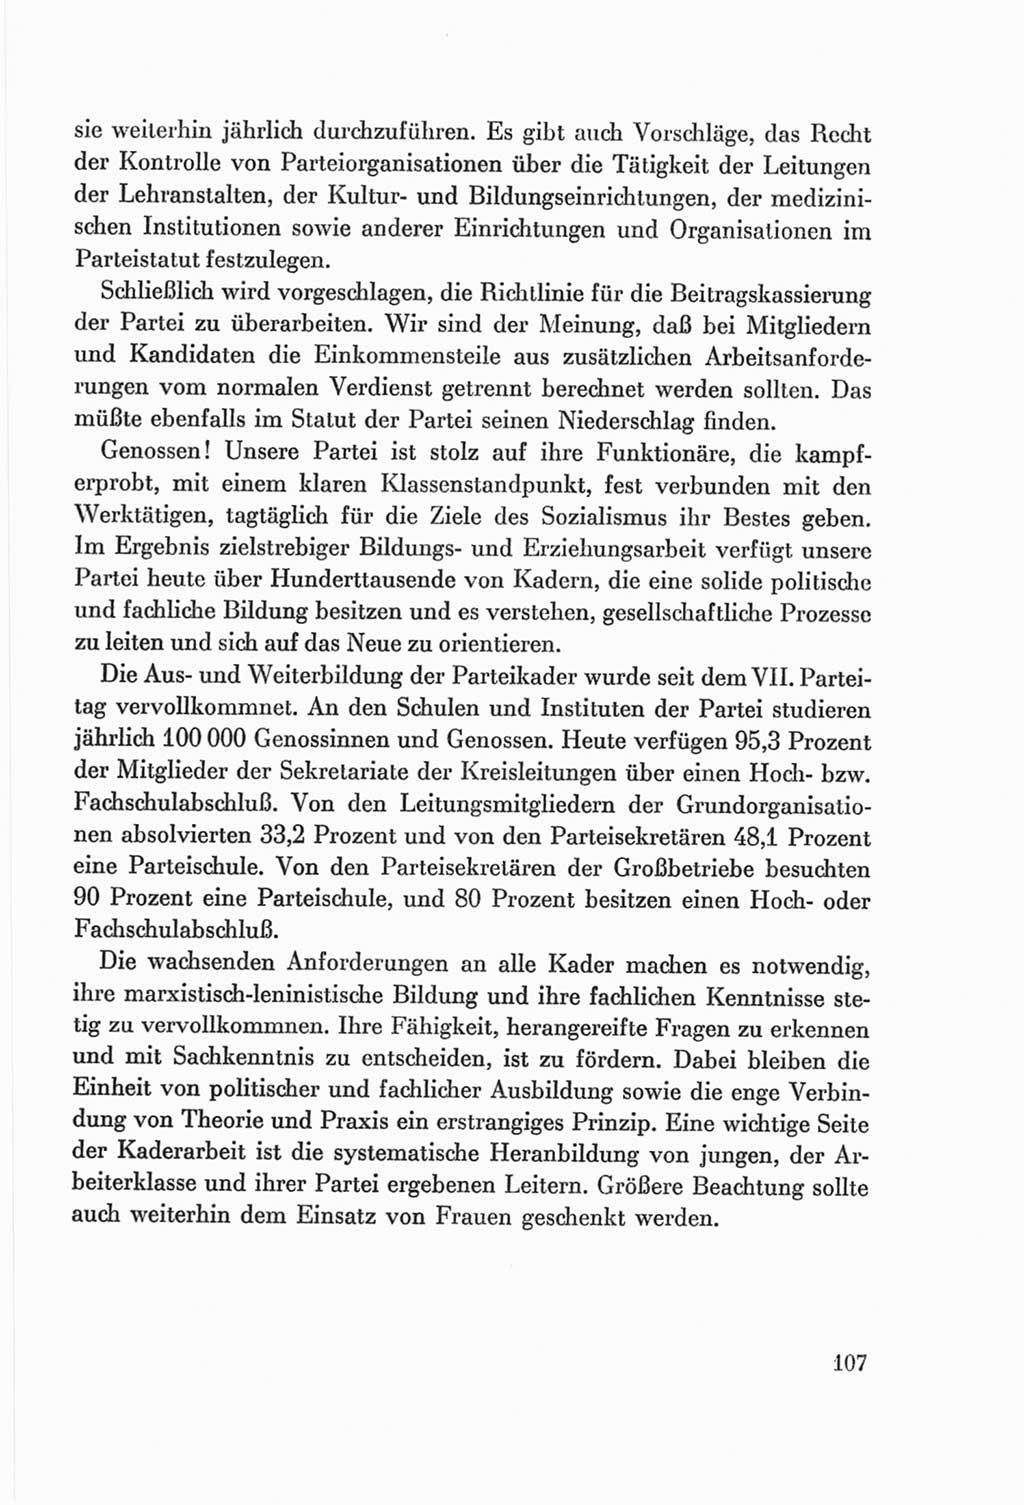 Protokoll der Verhandlungen des Ⅷ. Parteitages der Sozialistischen Einheitspartei Deutschlands (SED) [Deutsche Demokratische Republik (DDR)] 1971, Band 1, Seite 107 (Prot. Verh. Ⅷ. PT SED DDR 1971, Bd. 1, S. 107)